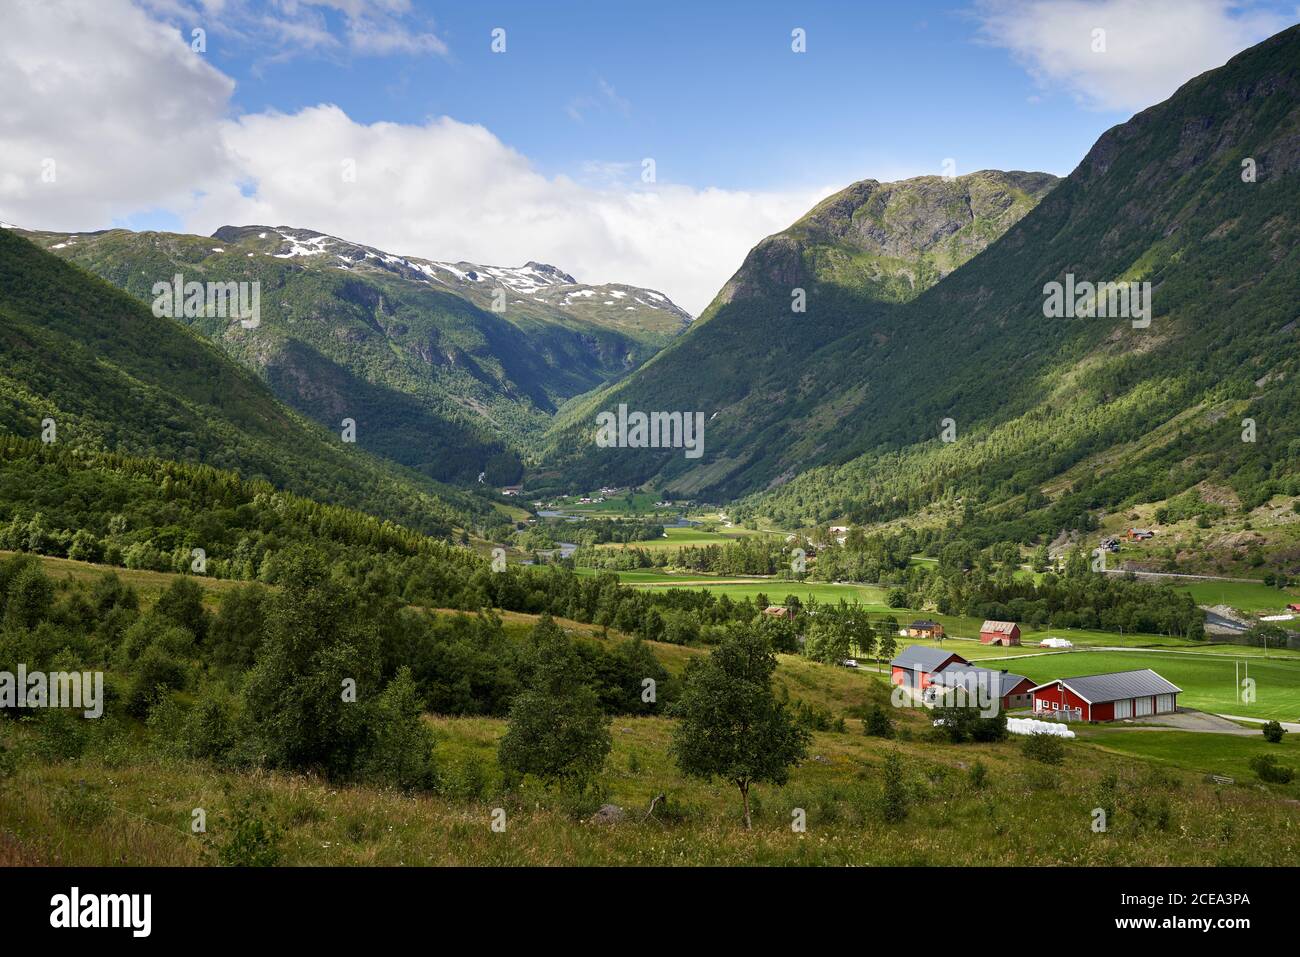 Modernos edificios agrícolas, un tractor y campos verdes entre las altas montañas noruegas, cerca de Hemsedal Foto de stock